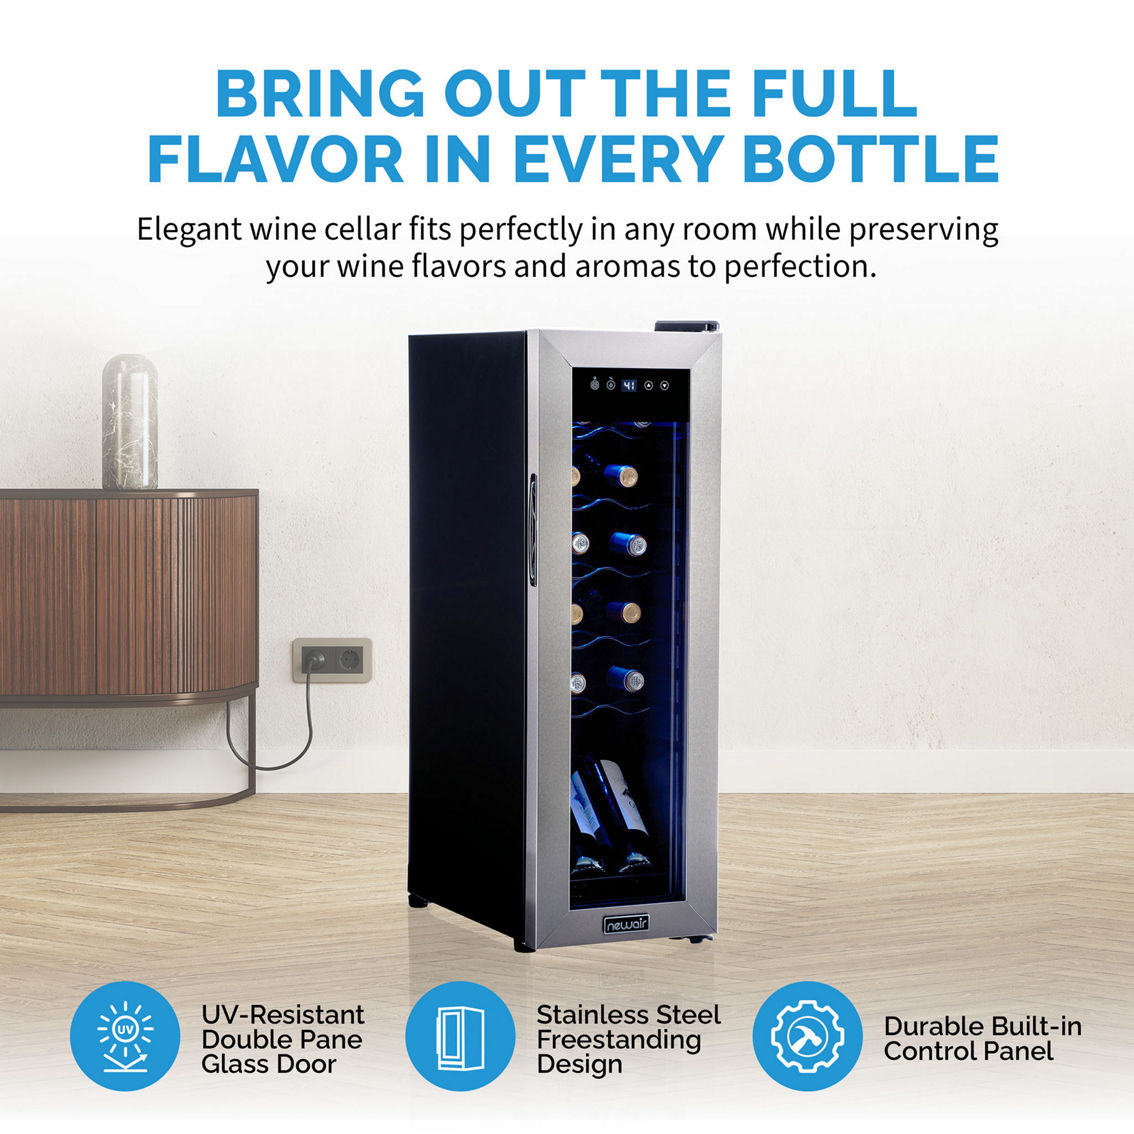 NewAir 12 Bottle Wine Cooler Refrigerator - Image 5 of 9